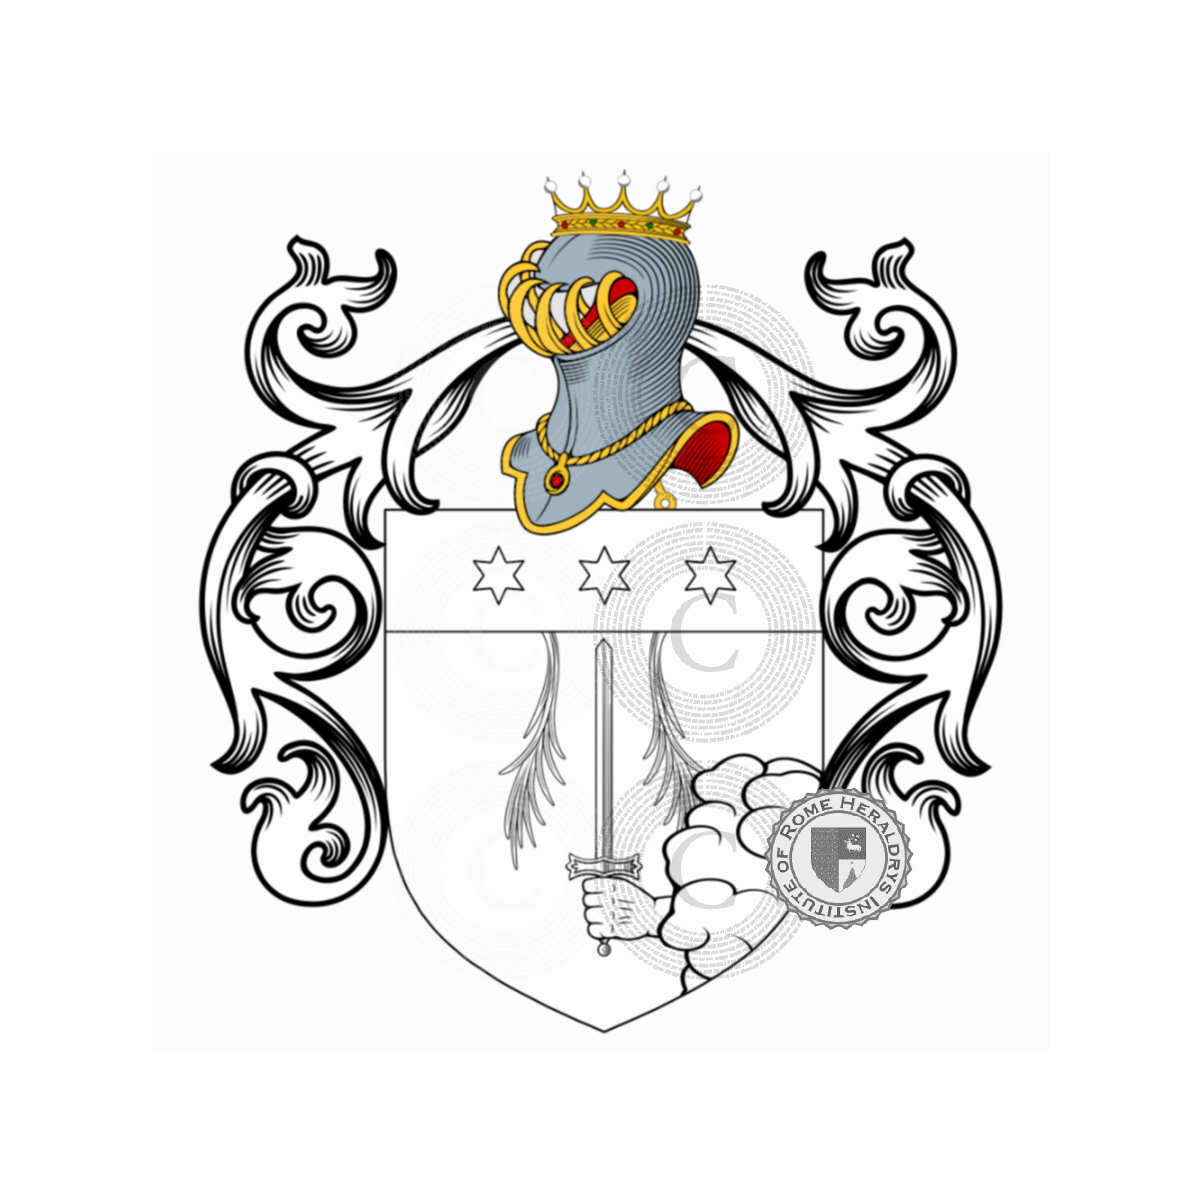 Escudo de la familiaPolati, Polati,Polatte,Polatti,Polatus,Poulat